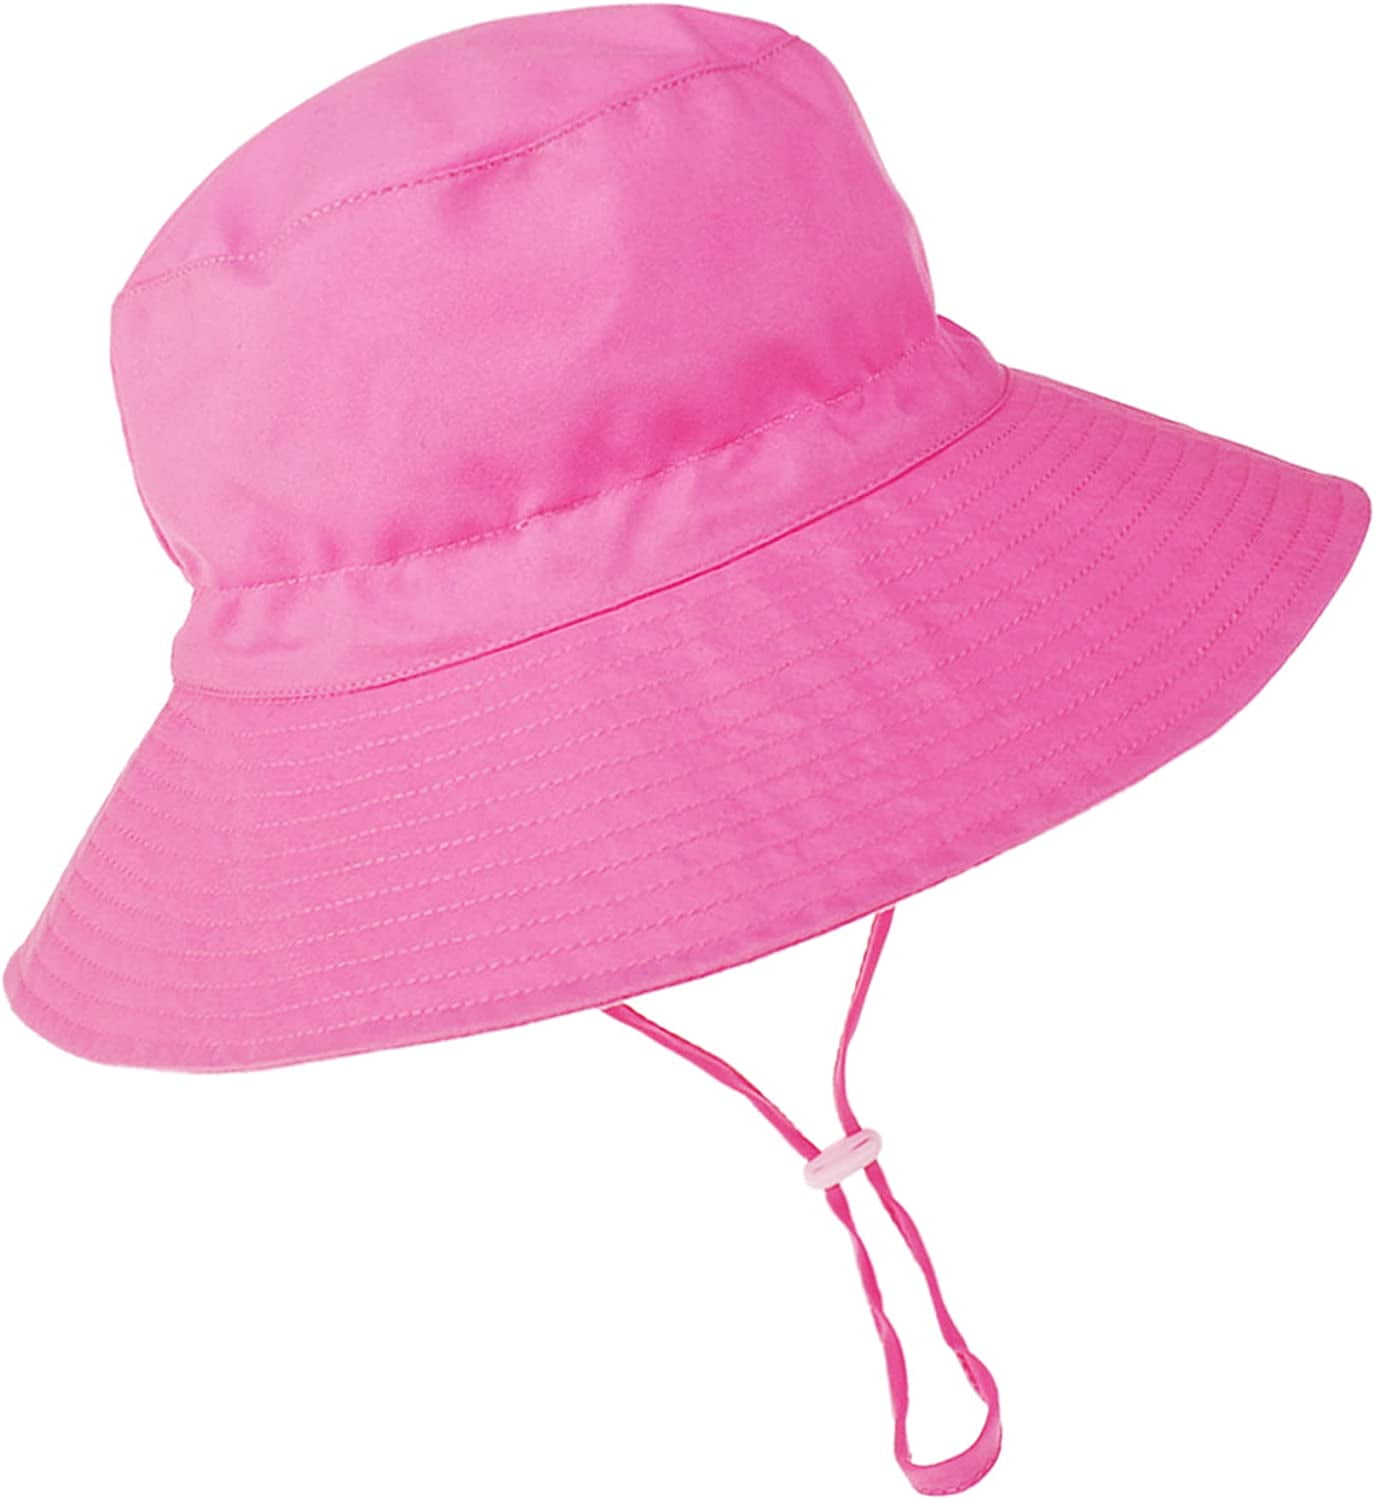 Baby Sun Hat Toddler Beach Swim Hats UPF 50+ Summer Bucket Hat Kids Infant  Wide Brim Adjustable Sun Hat for Baby Boy Girls Pink 2-5T